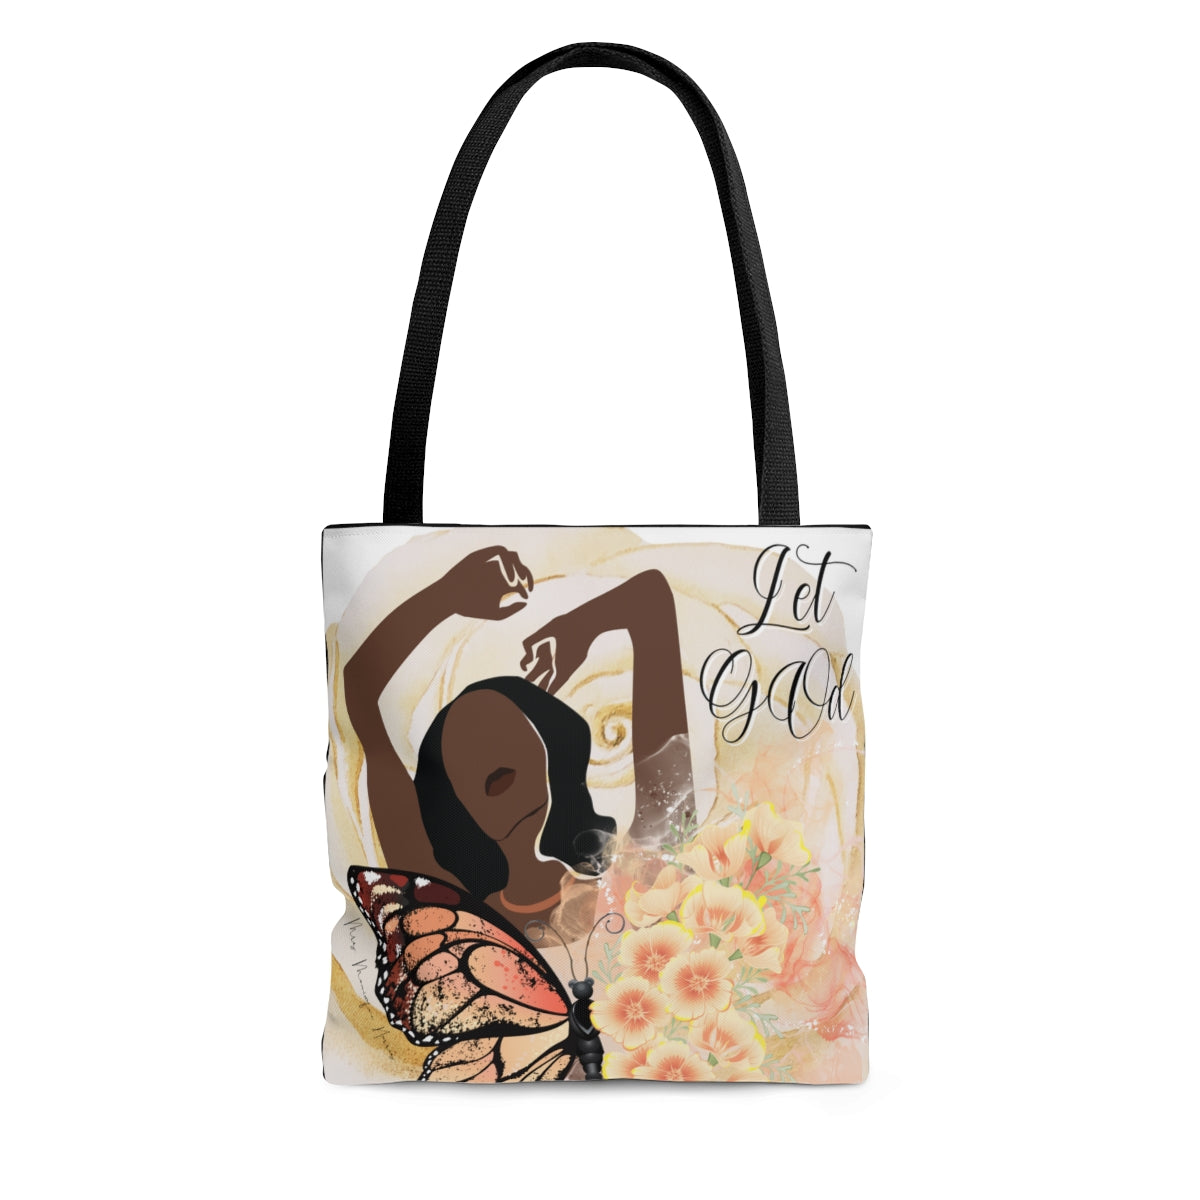 "Let GOd" Tote Bag